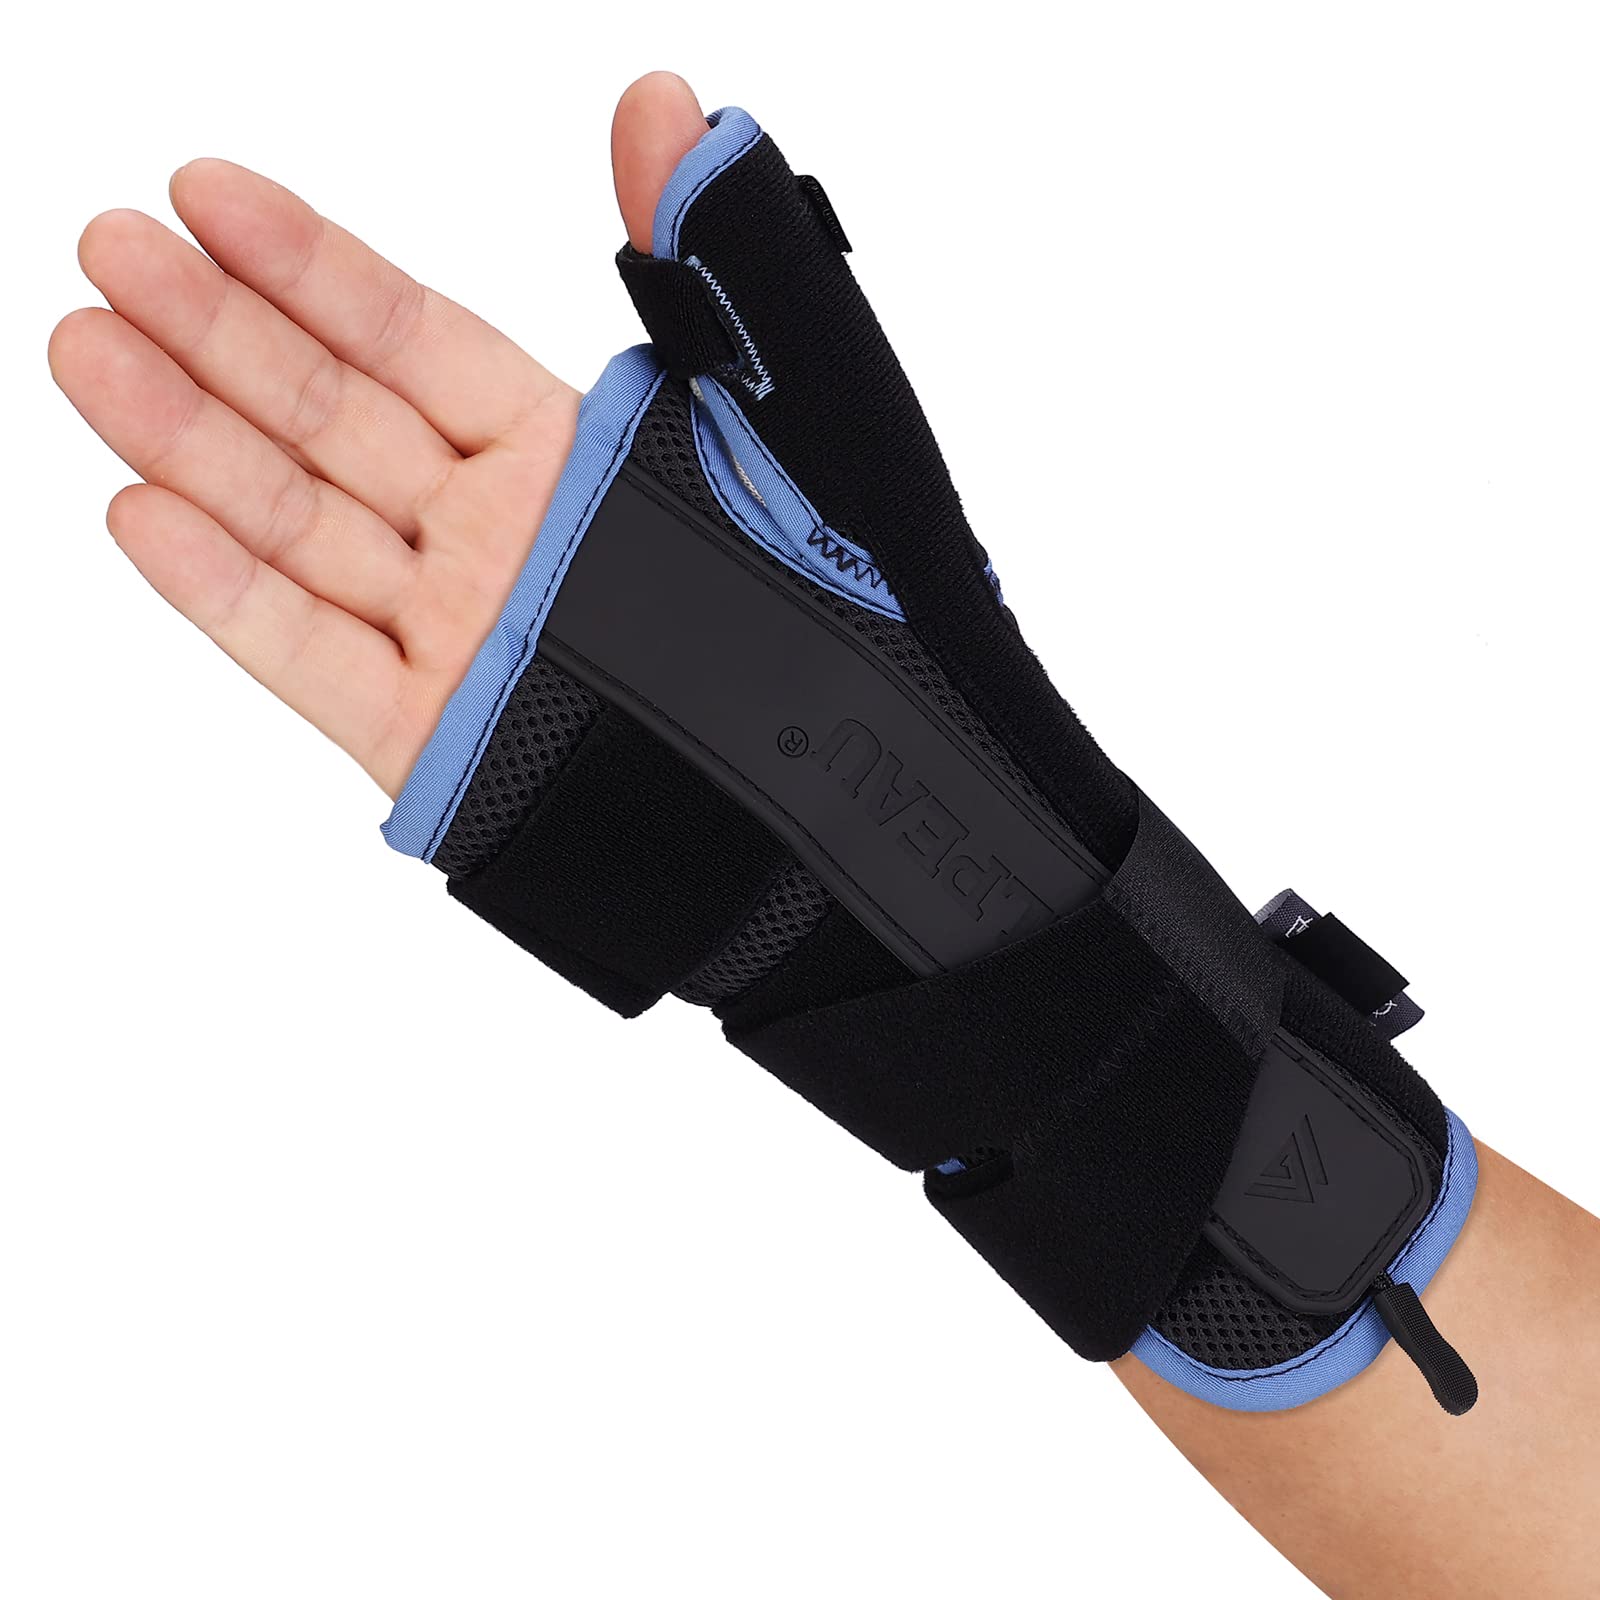 VELPEAU Wrist Brace Thumb Spica Splint Support for De Quervain's